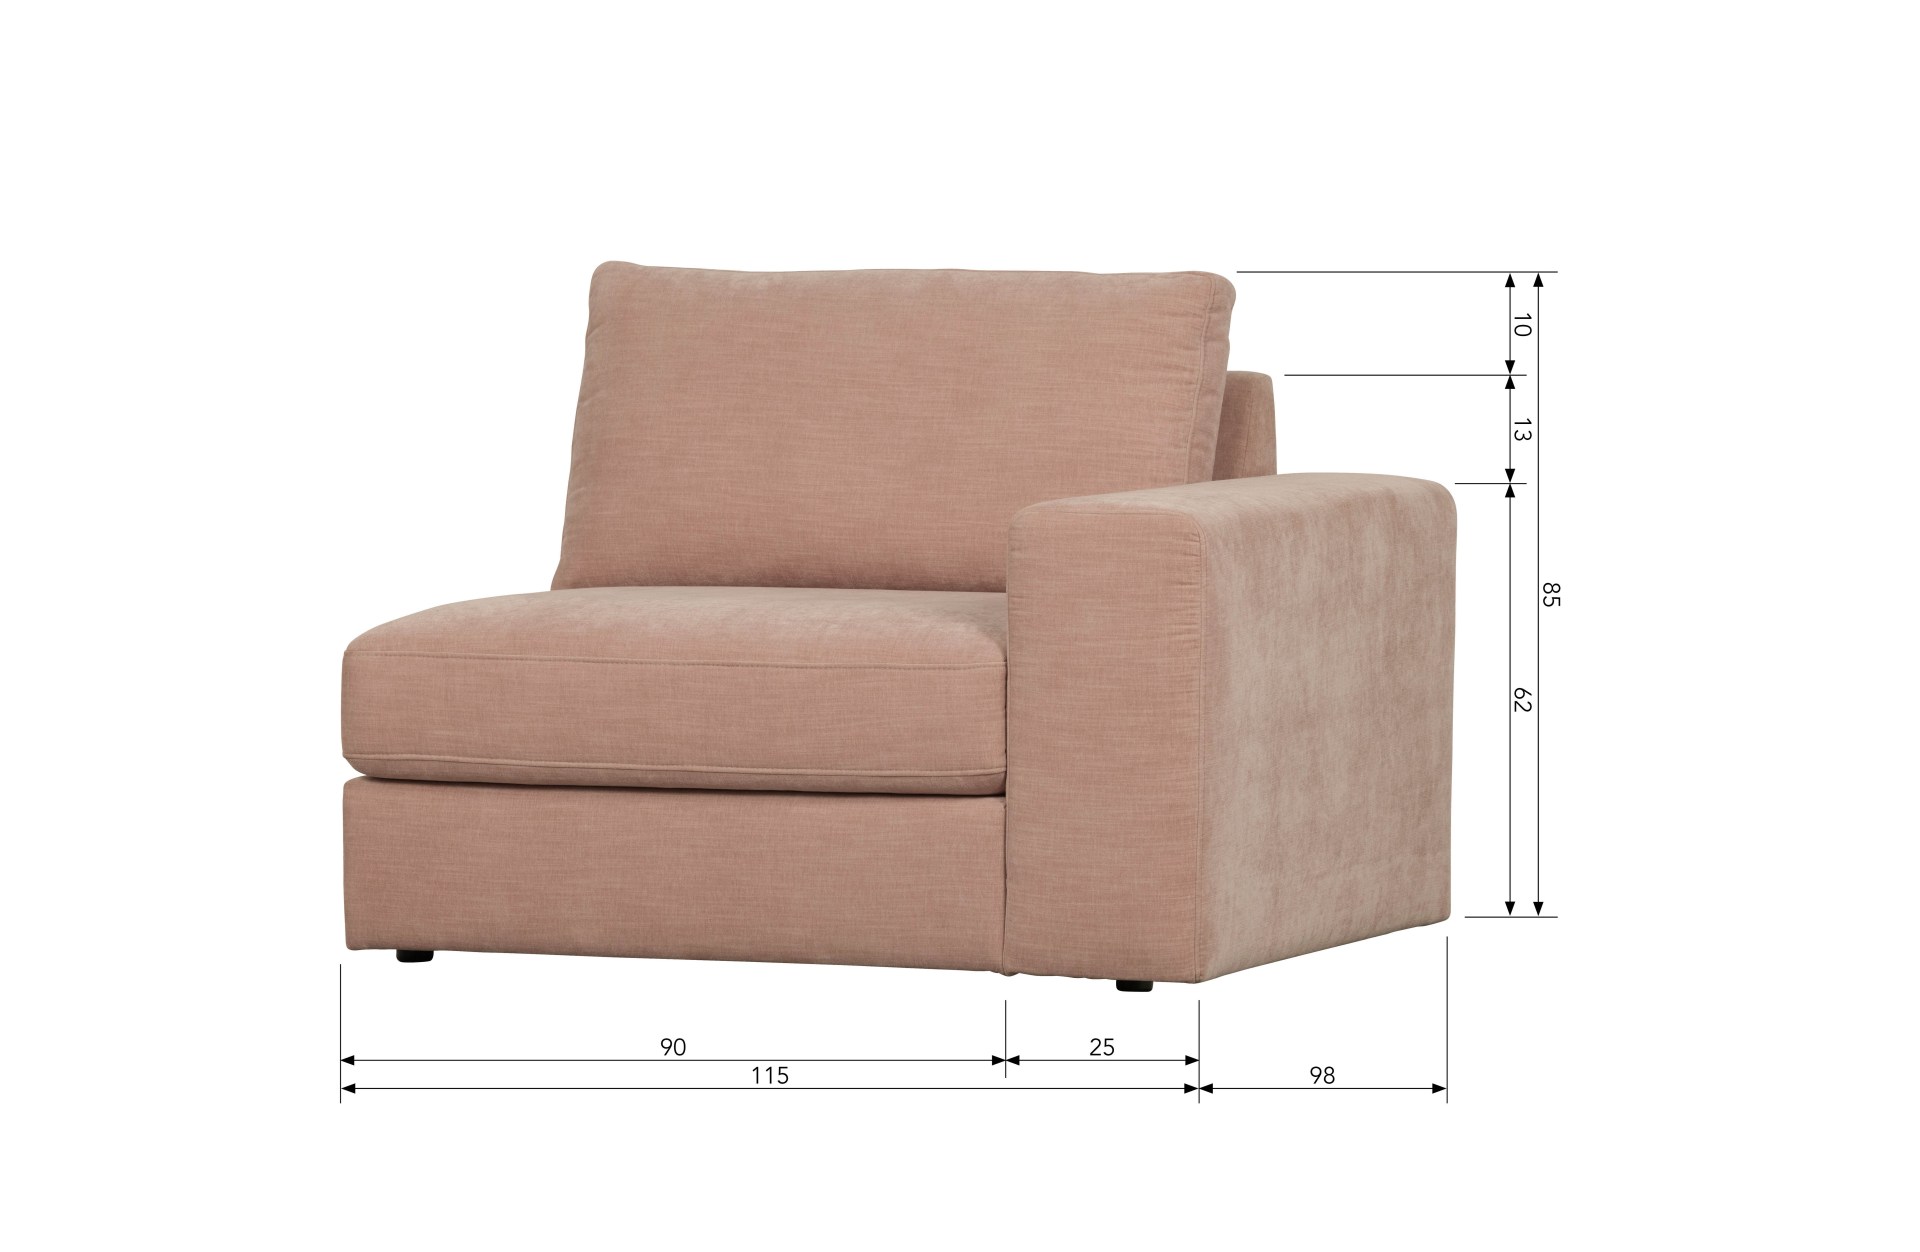 Das Modulsofa Family überzeugt mit seinem modernen Design. Das 1-Seat Element mit der Ausführung Rechts wurde aus Gewebe-Stoff gefertigt, welcher einen einen rosa Farbton besitzen. Das Gestell ist aus Metall und hat eine schwarze Farbe. Das Element hat ei